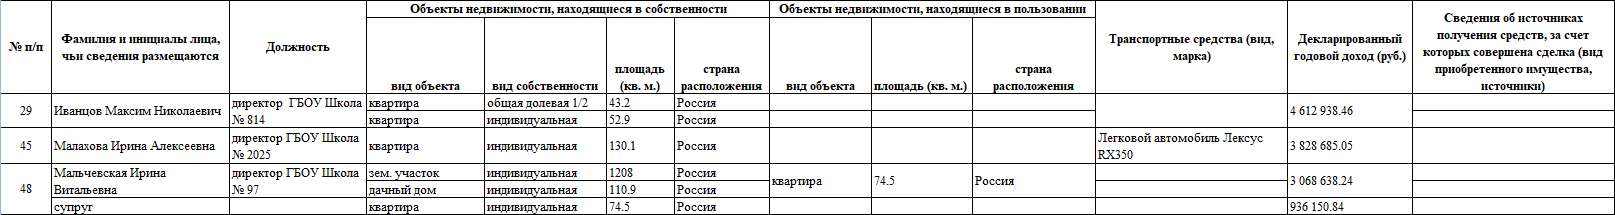 Руководители учреждений города Москвы - образовательные учреждения (все предоставленные сведения)